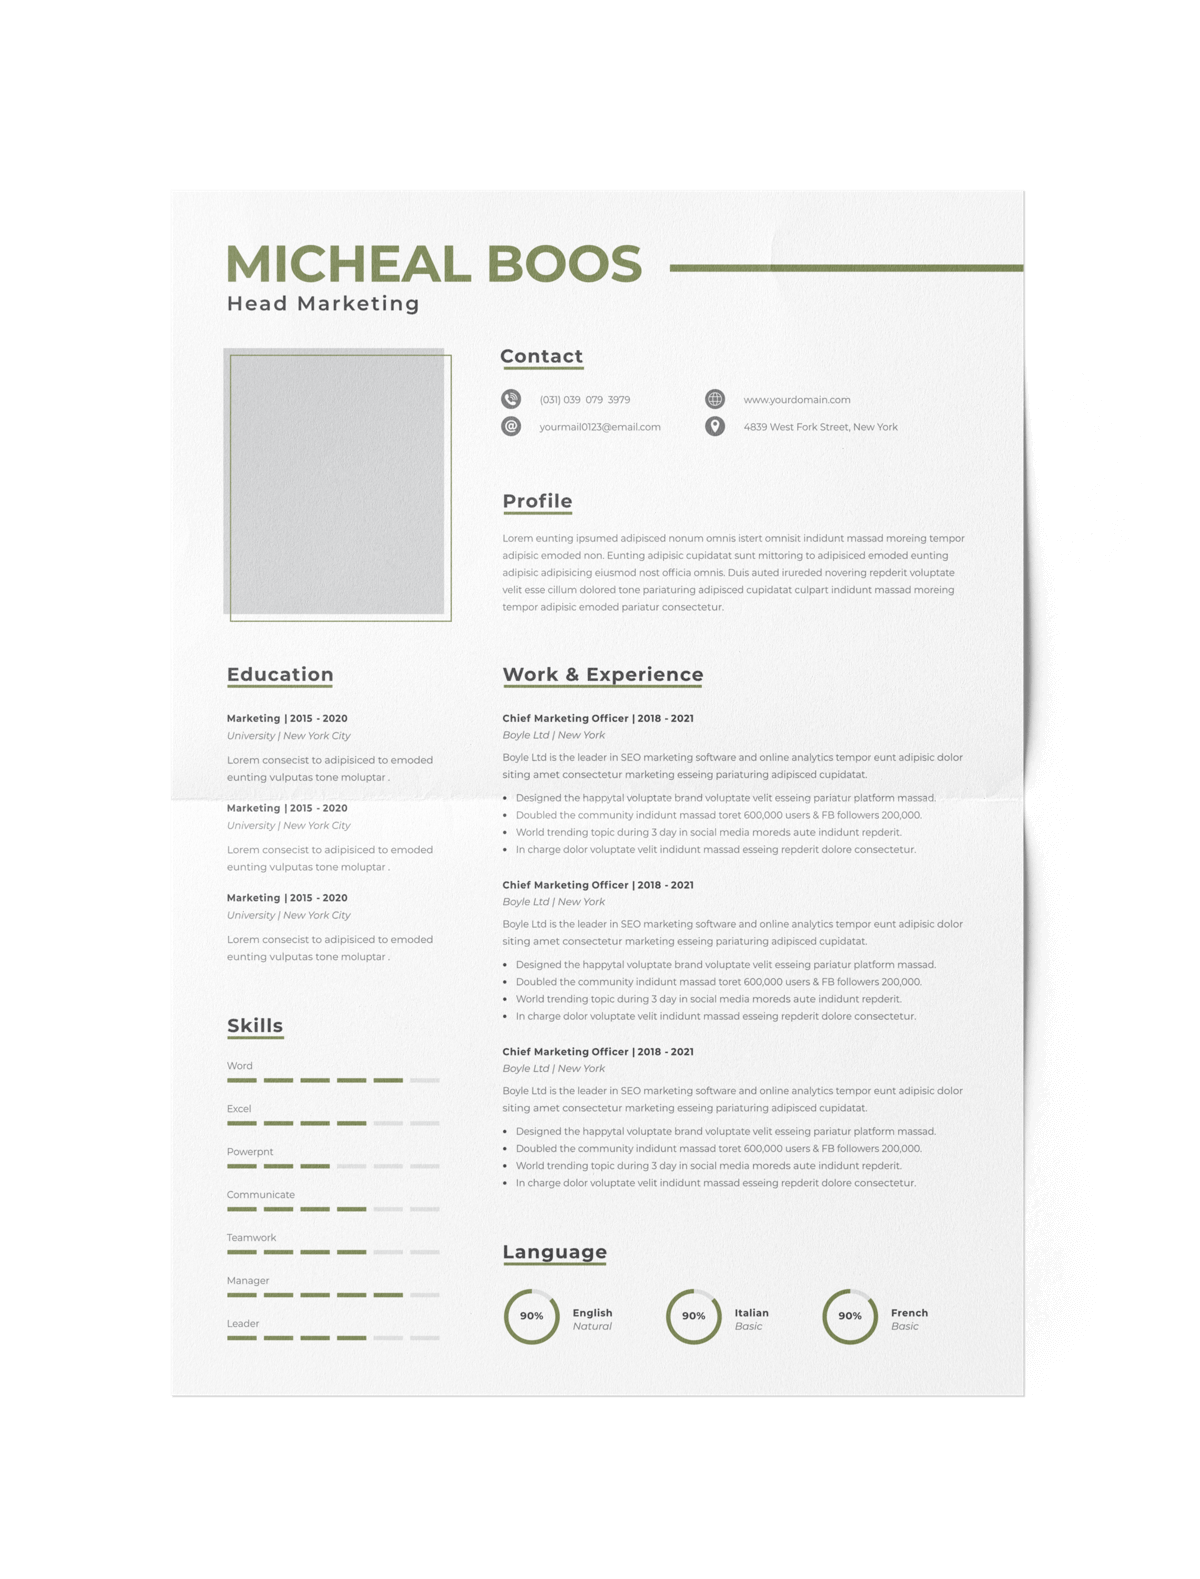 CV #124 Micheal Boos